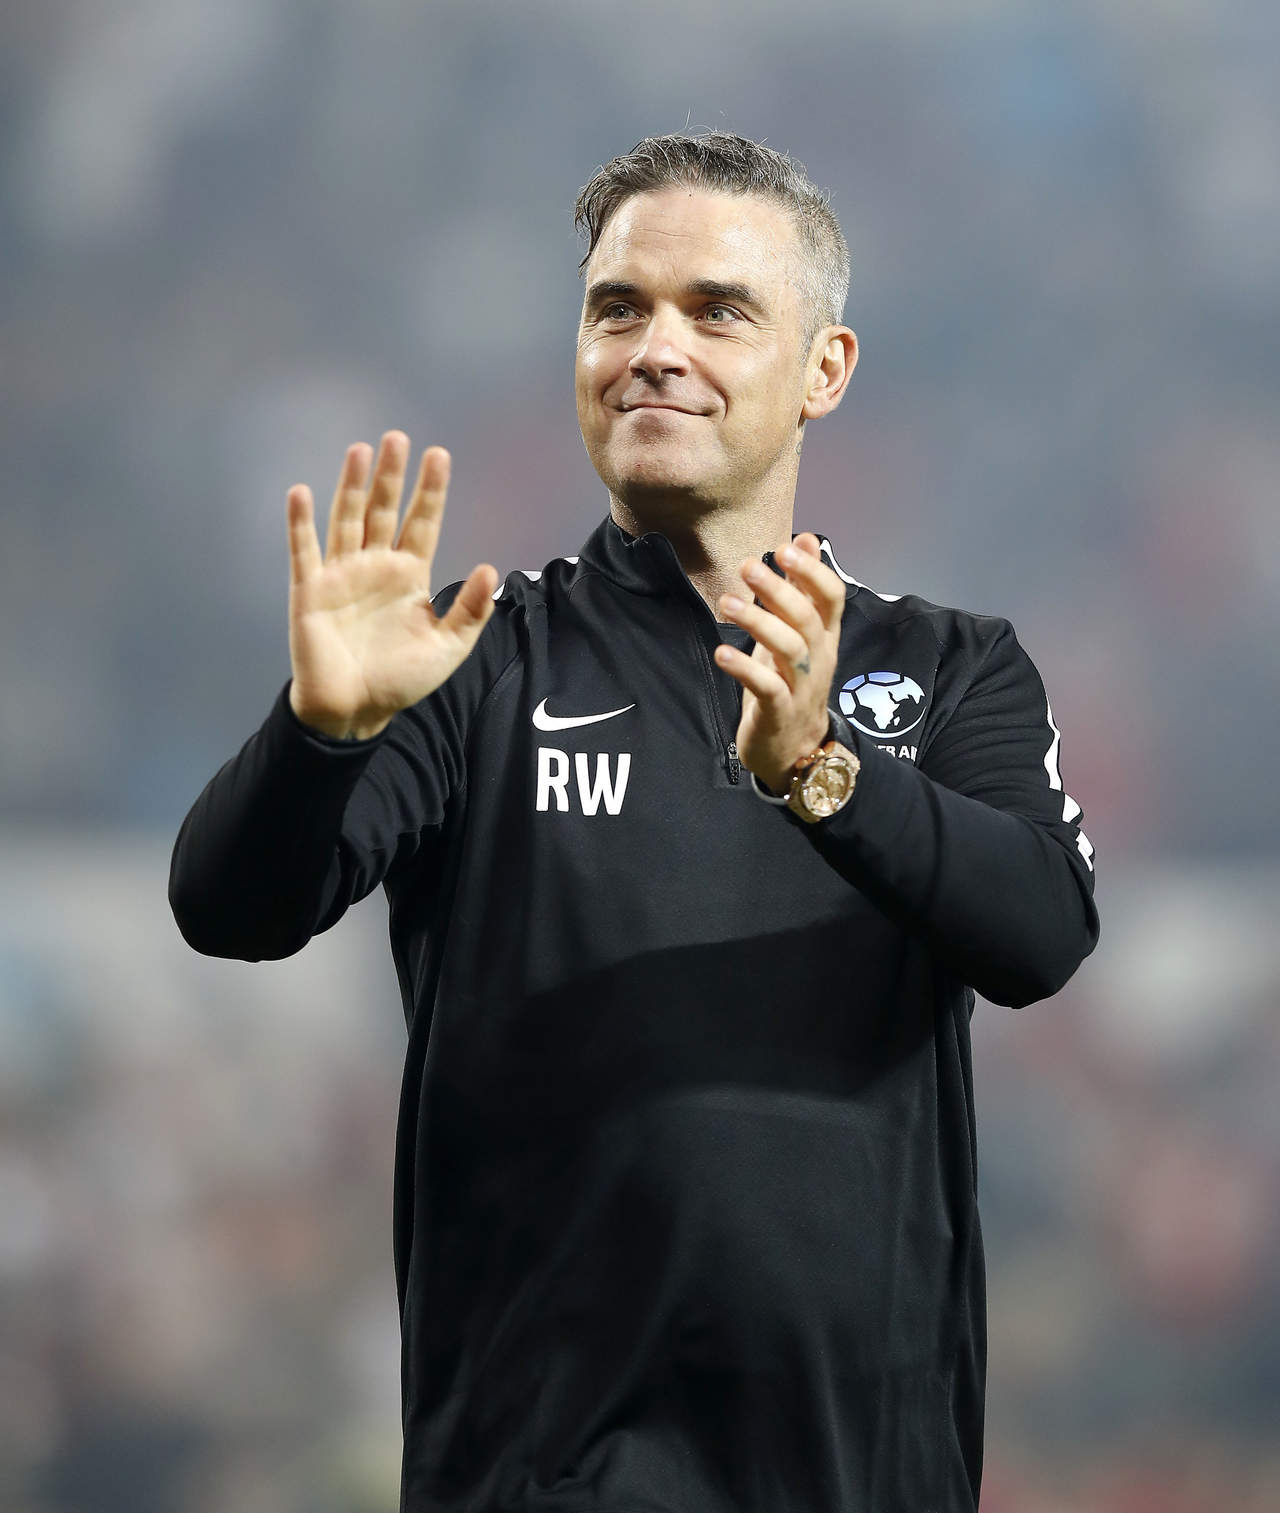 El cantante Robbie Williams, será el encargado de cantar en la apertura del Mundial de Futbol Rusia 2018. (ARCHIVO)